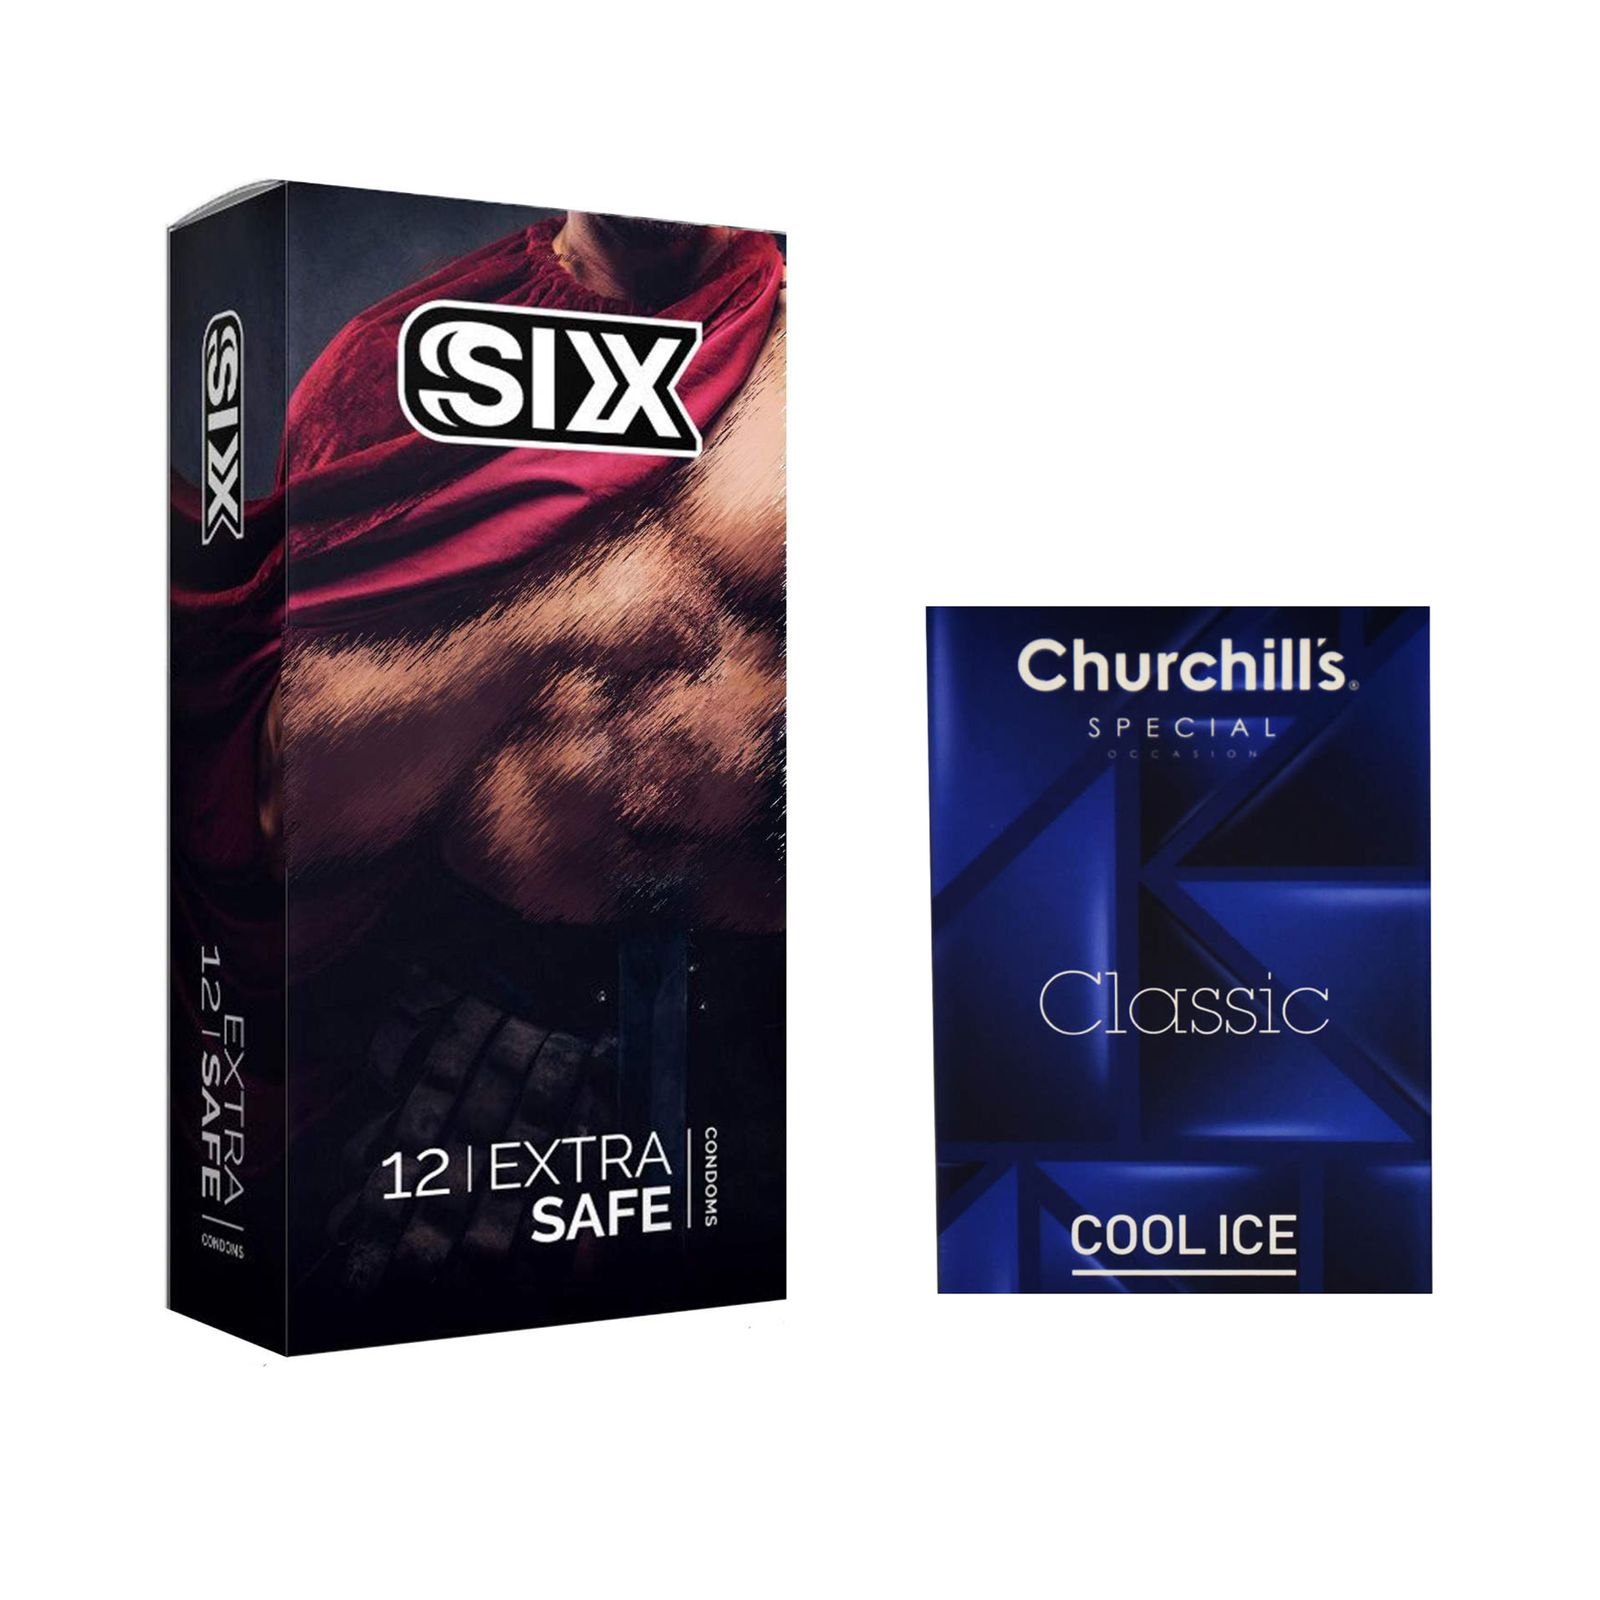 کاندوم سیکس مدل Max Safety بسته 12 عددی به همراه کاندوم چرچیلز مدل Cool Ice بسته 3 عددی -  - 2